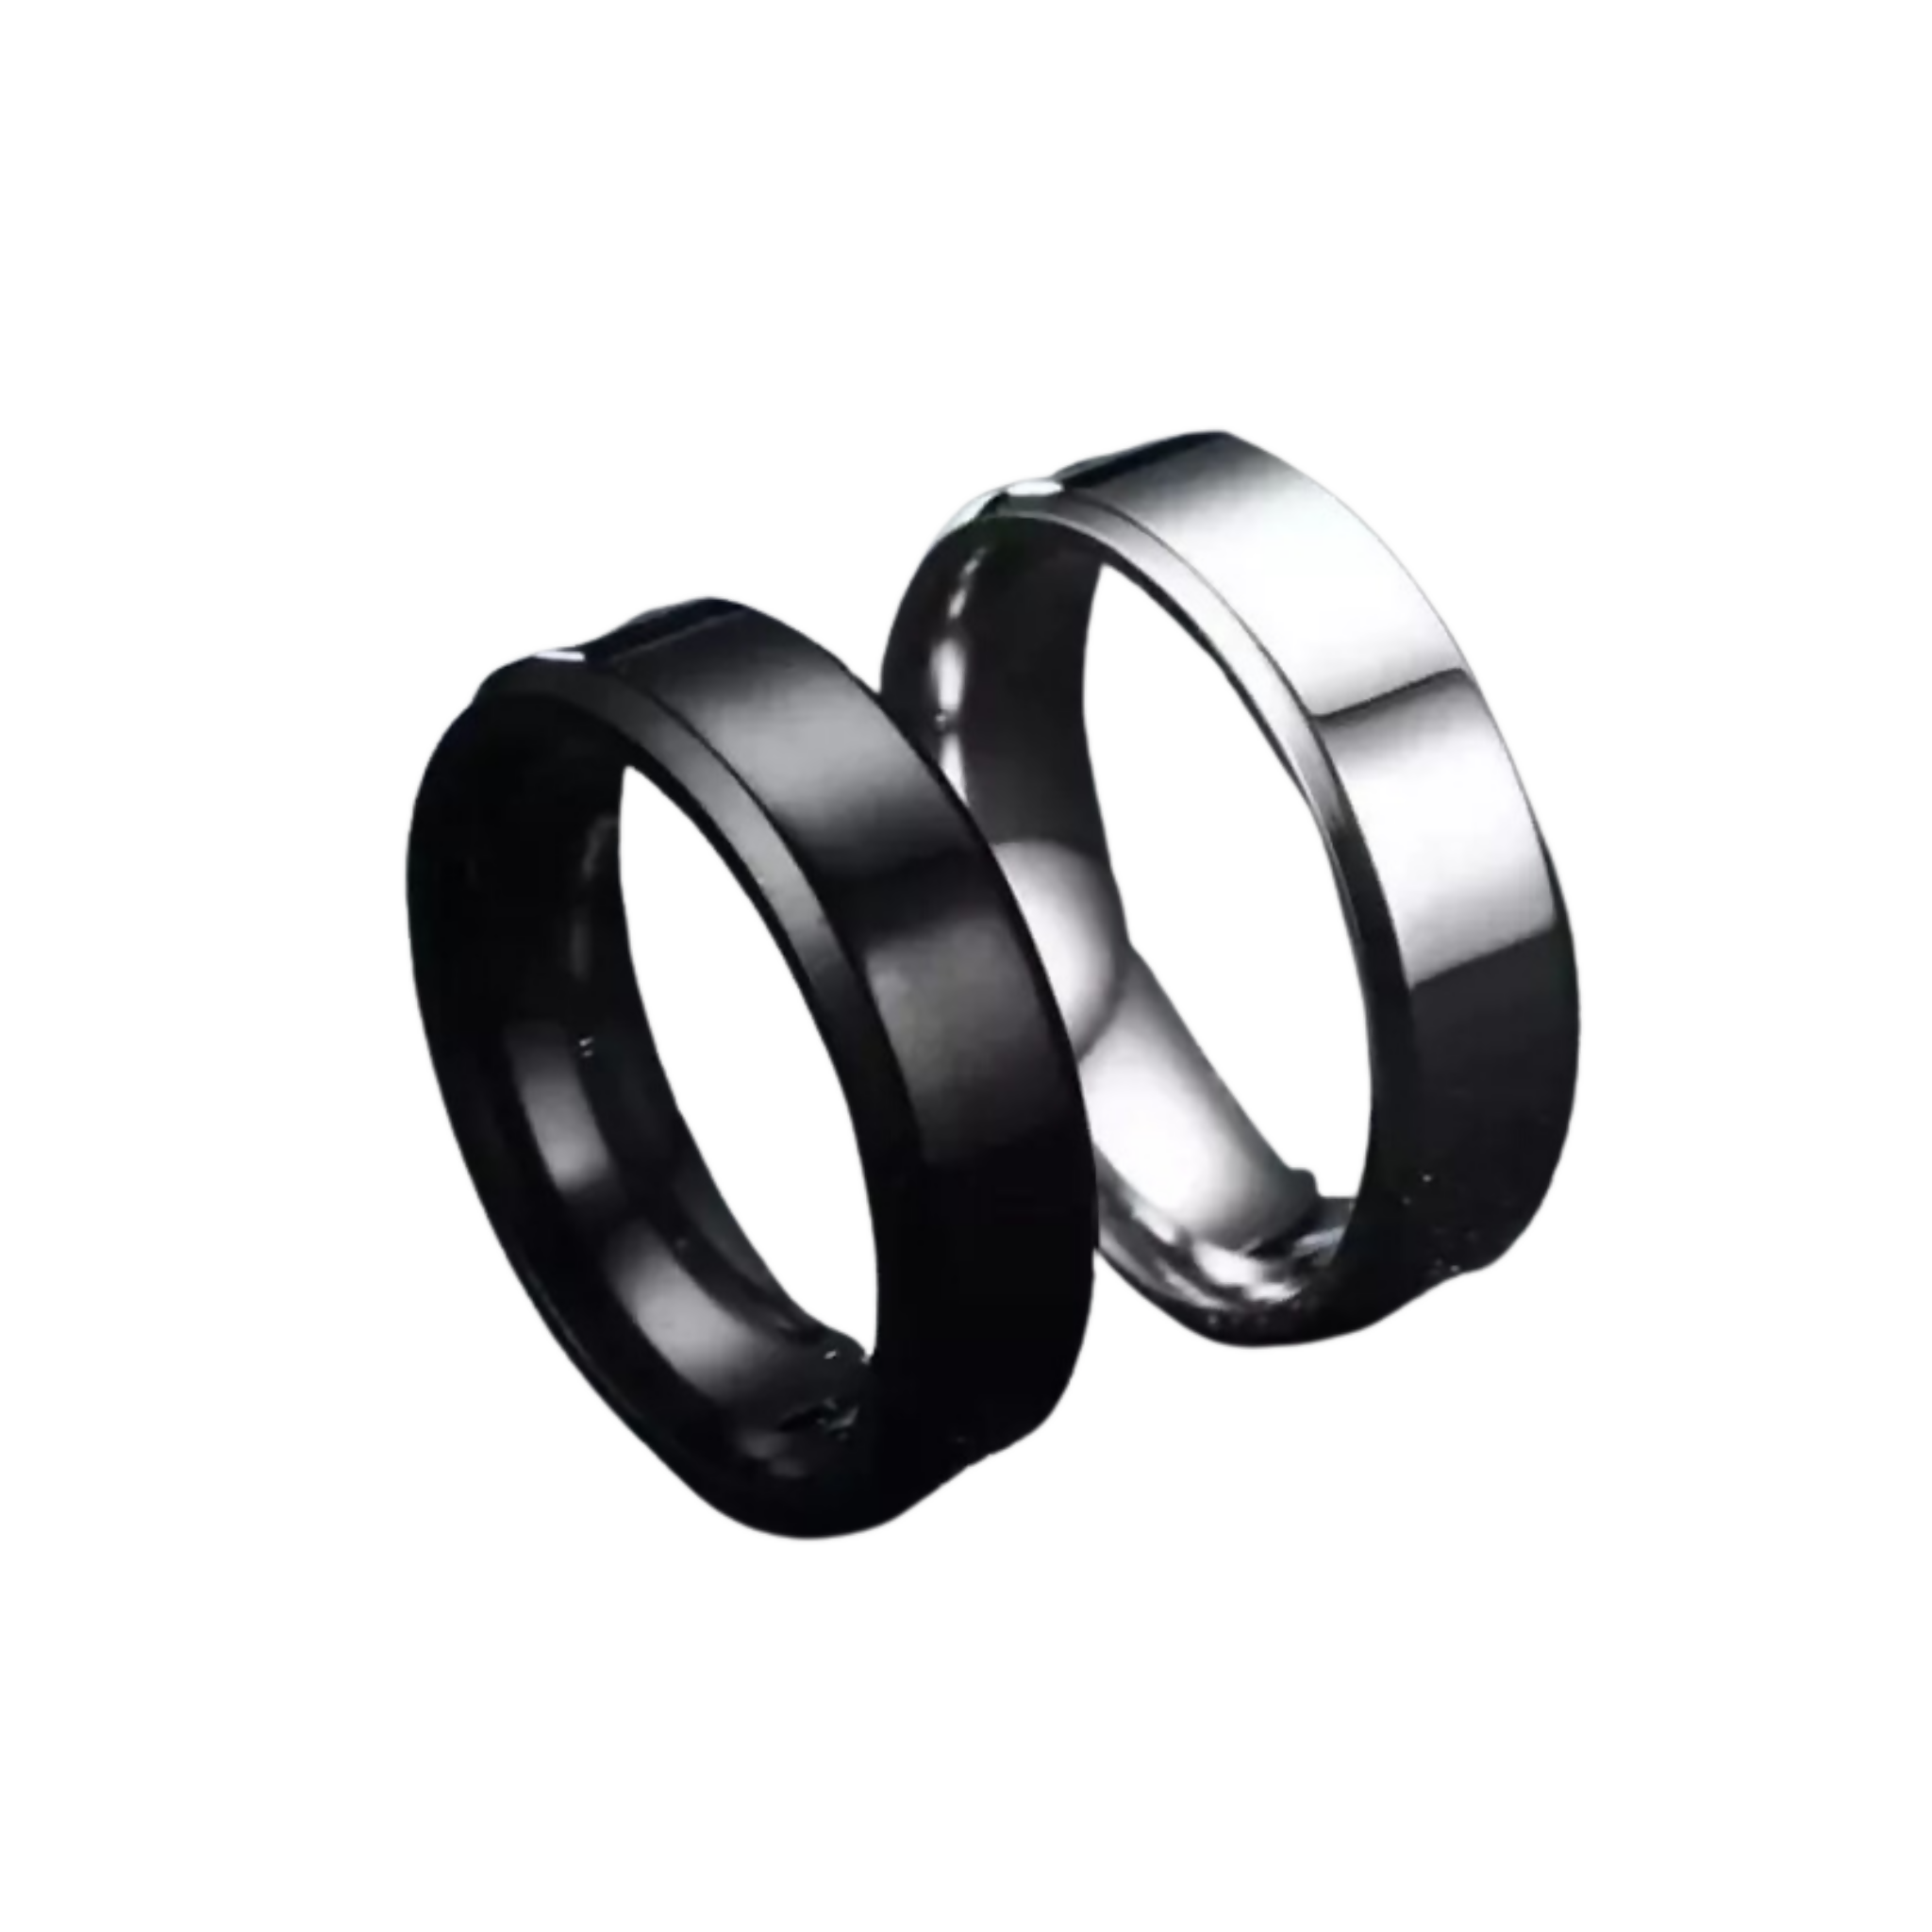 Ring, Elegance Engraved in Stainless Steel, for Men